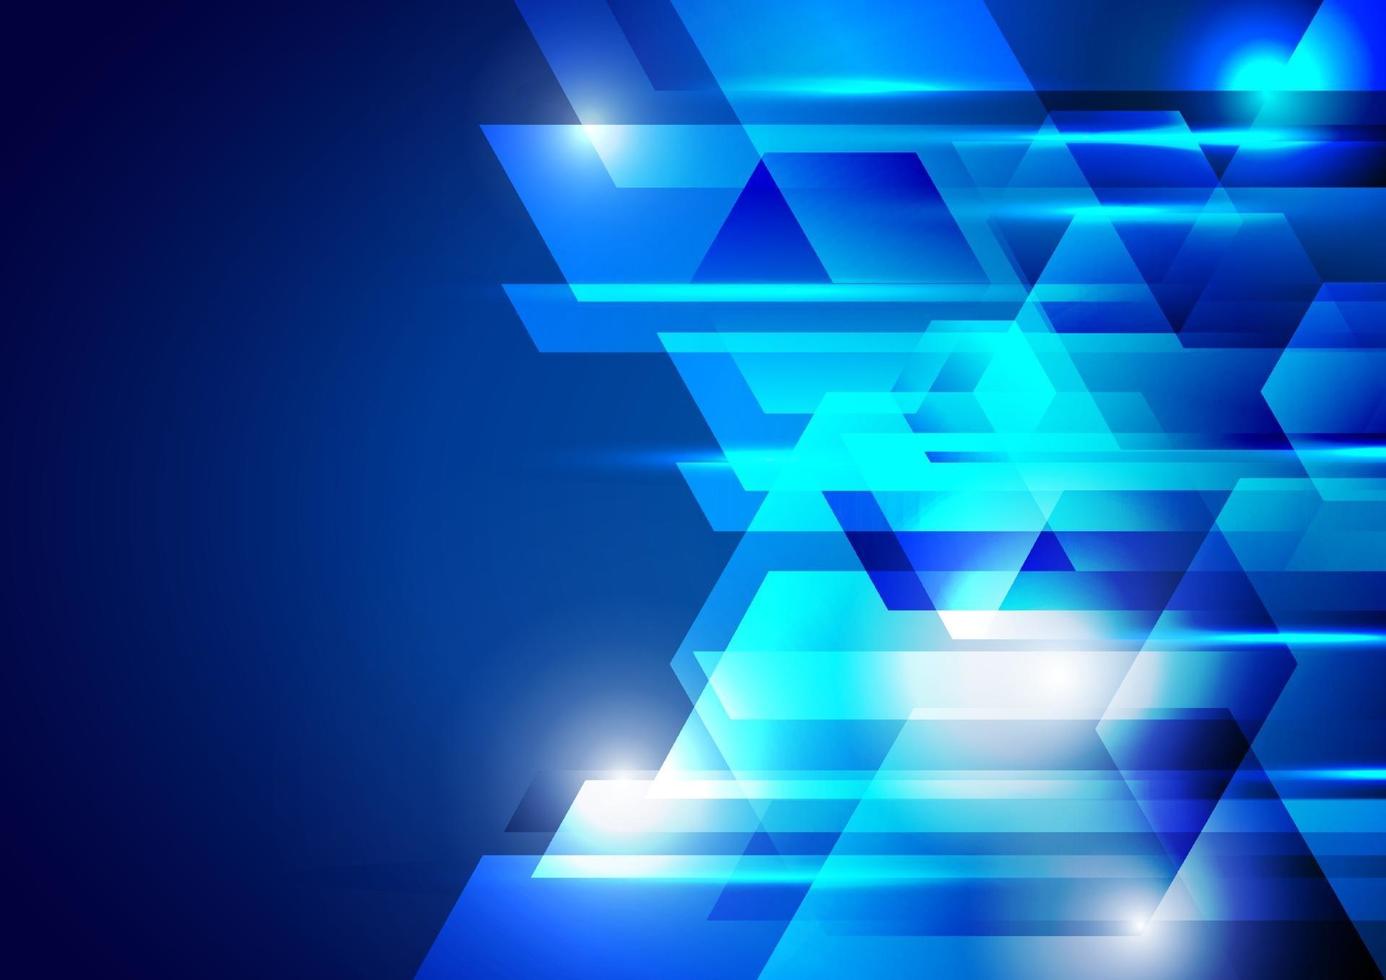 Projeto de tecnologia corporativa do hexágono geométrico abstrato azul com luz de fundo brilhante vetor